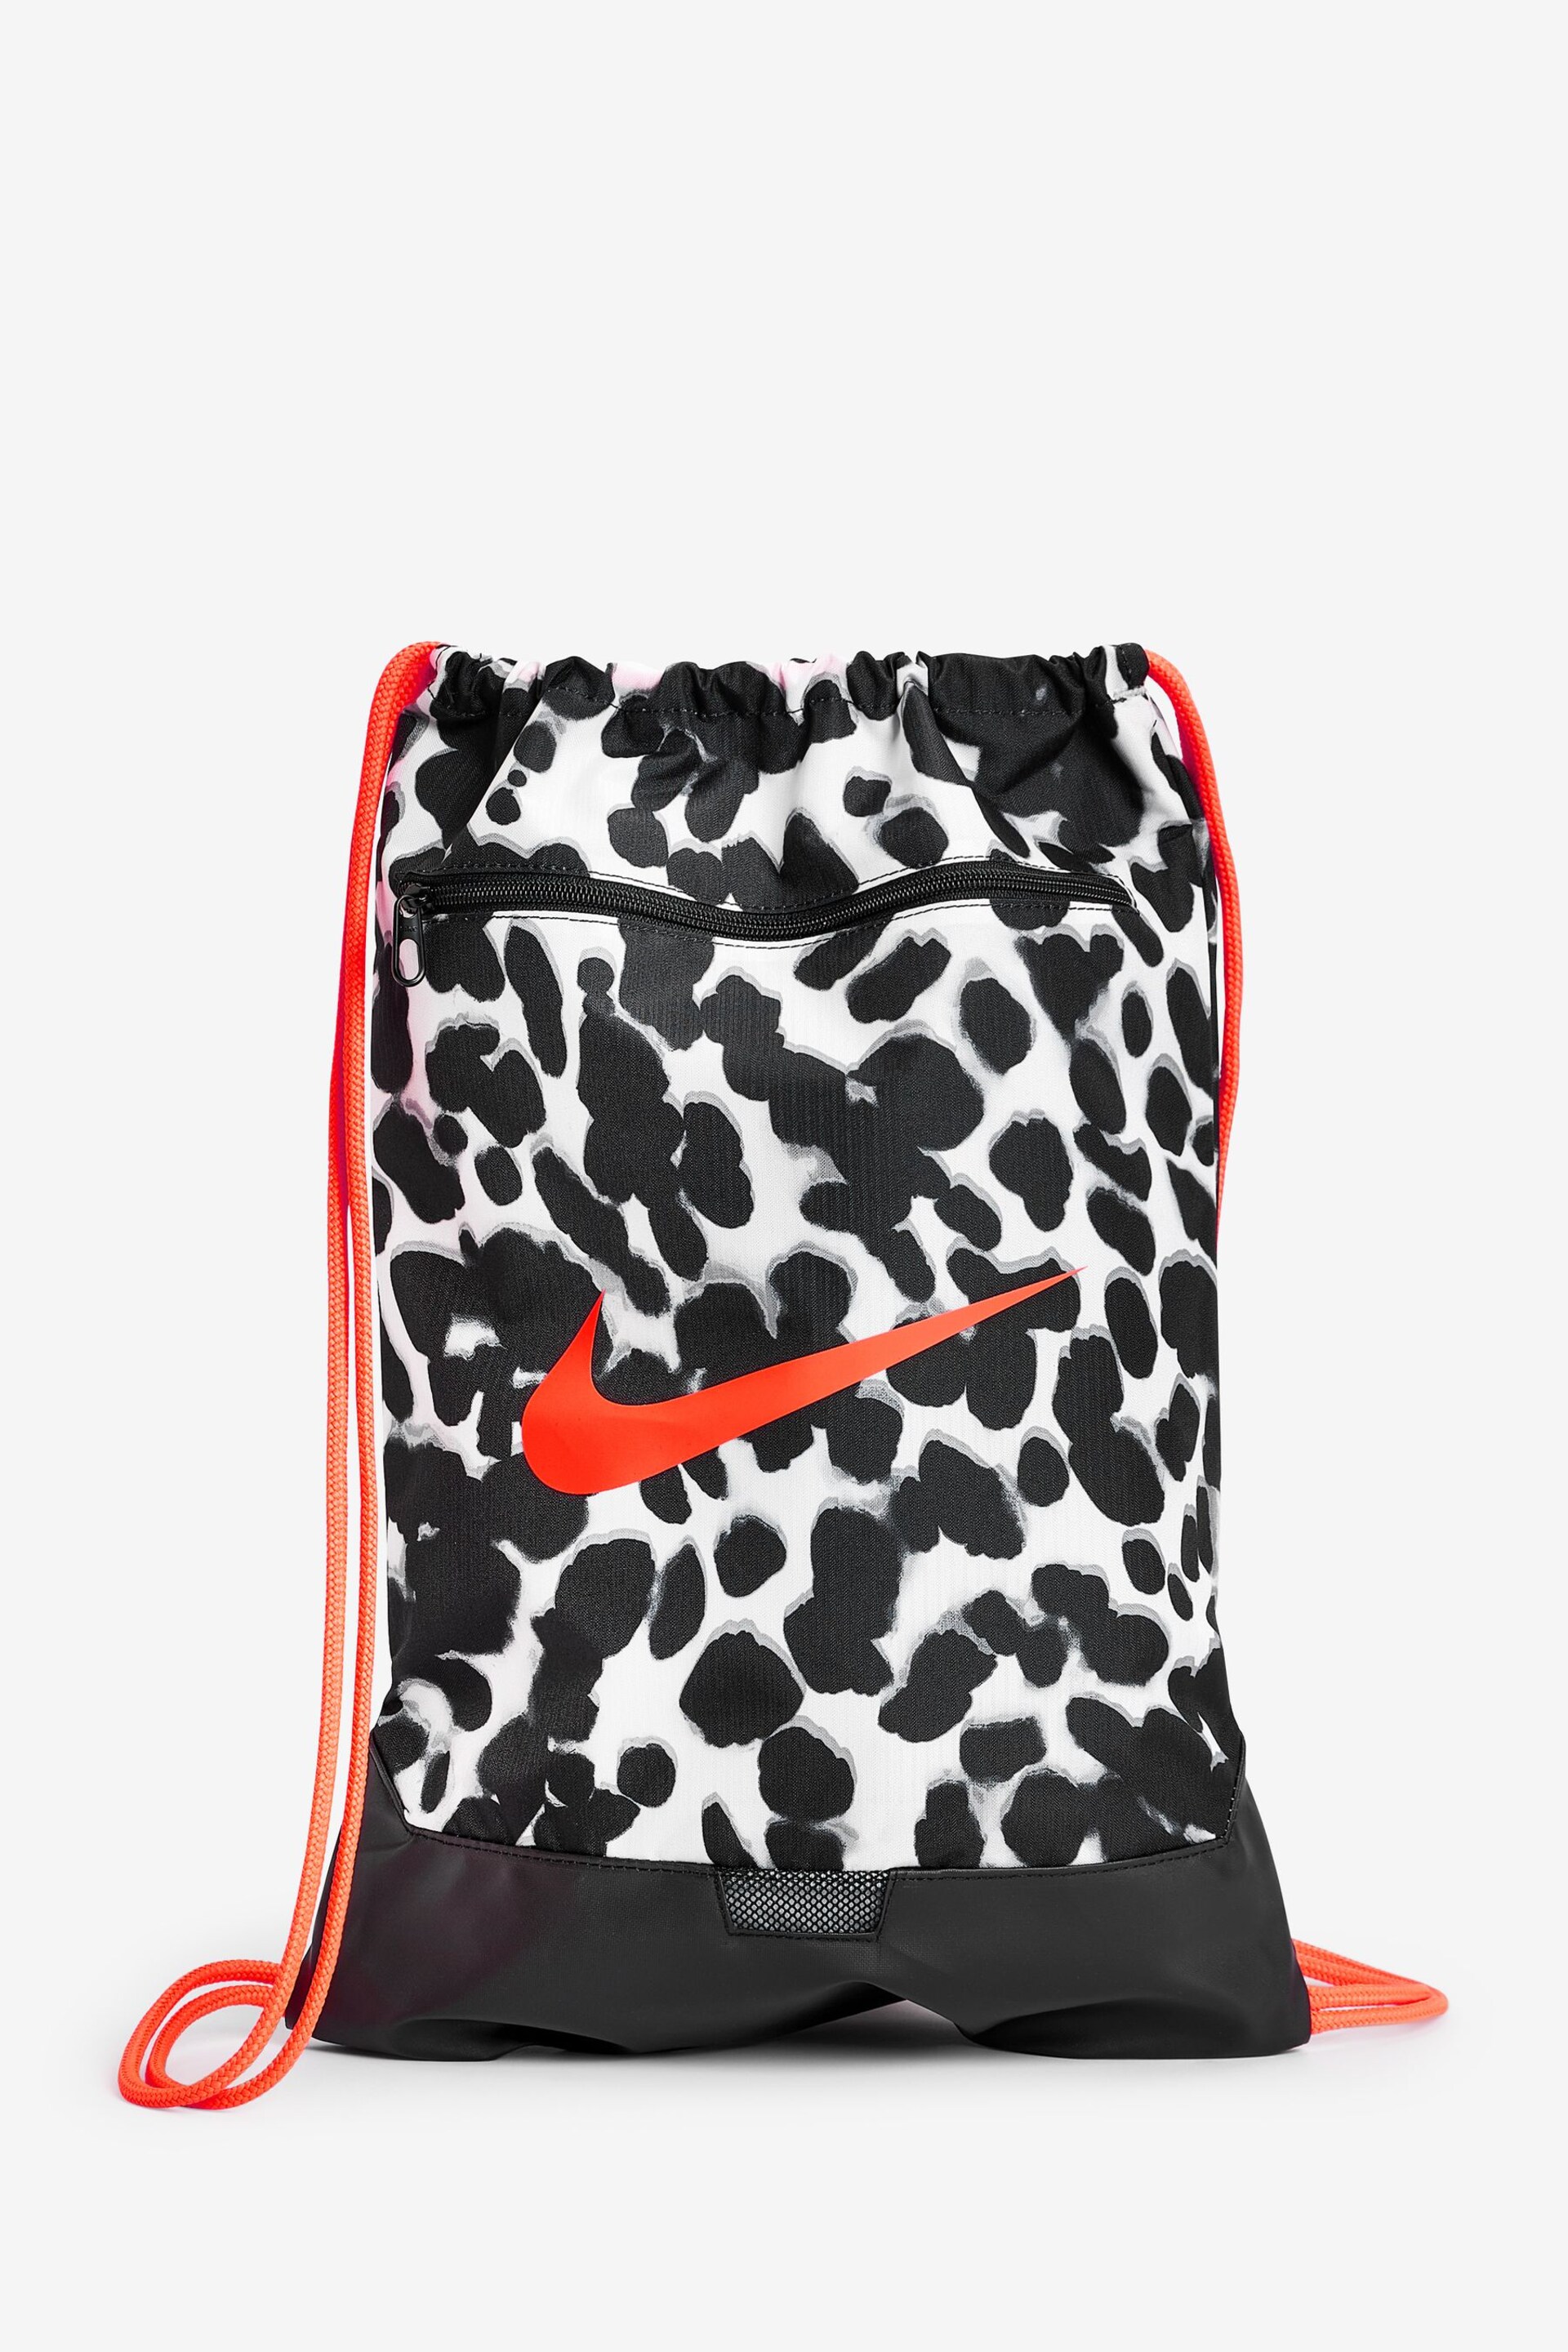 Nike Black 18L Brasilia Drawstring Bag - Image 3 of 8